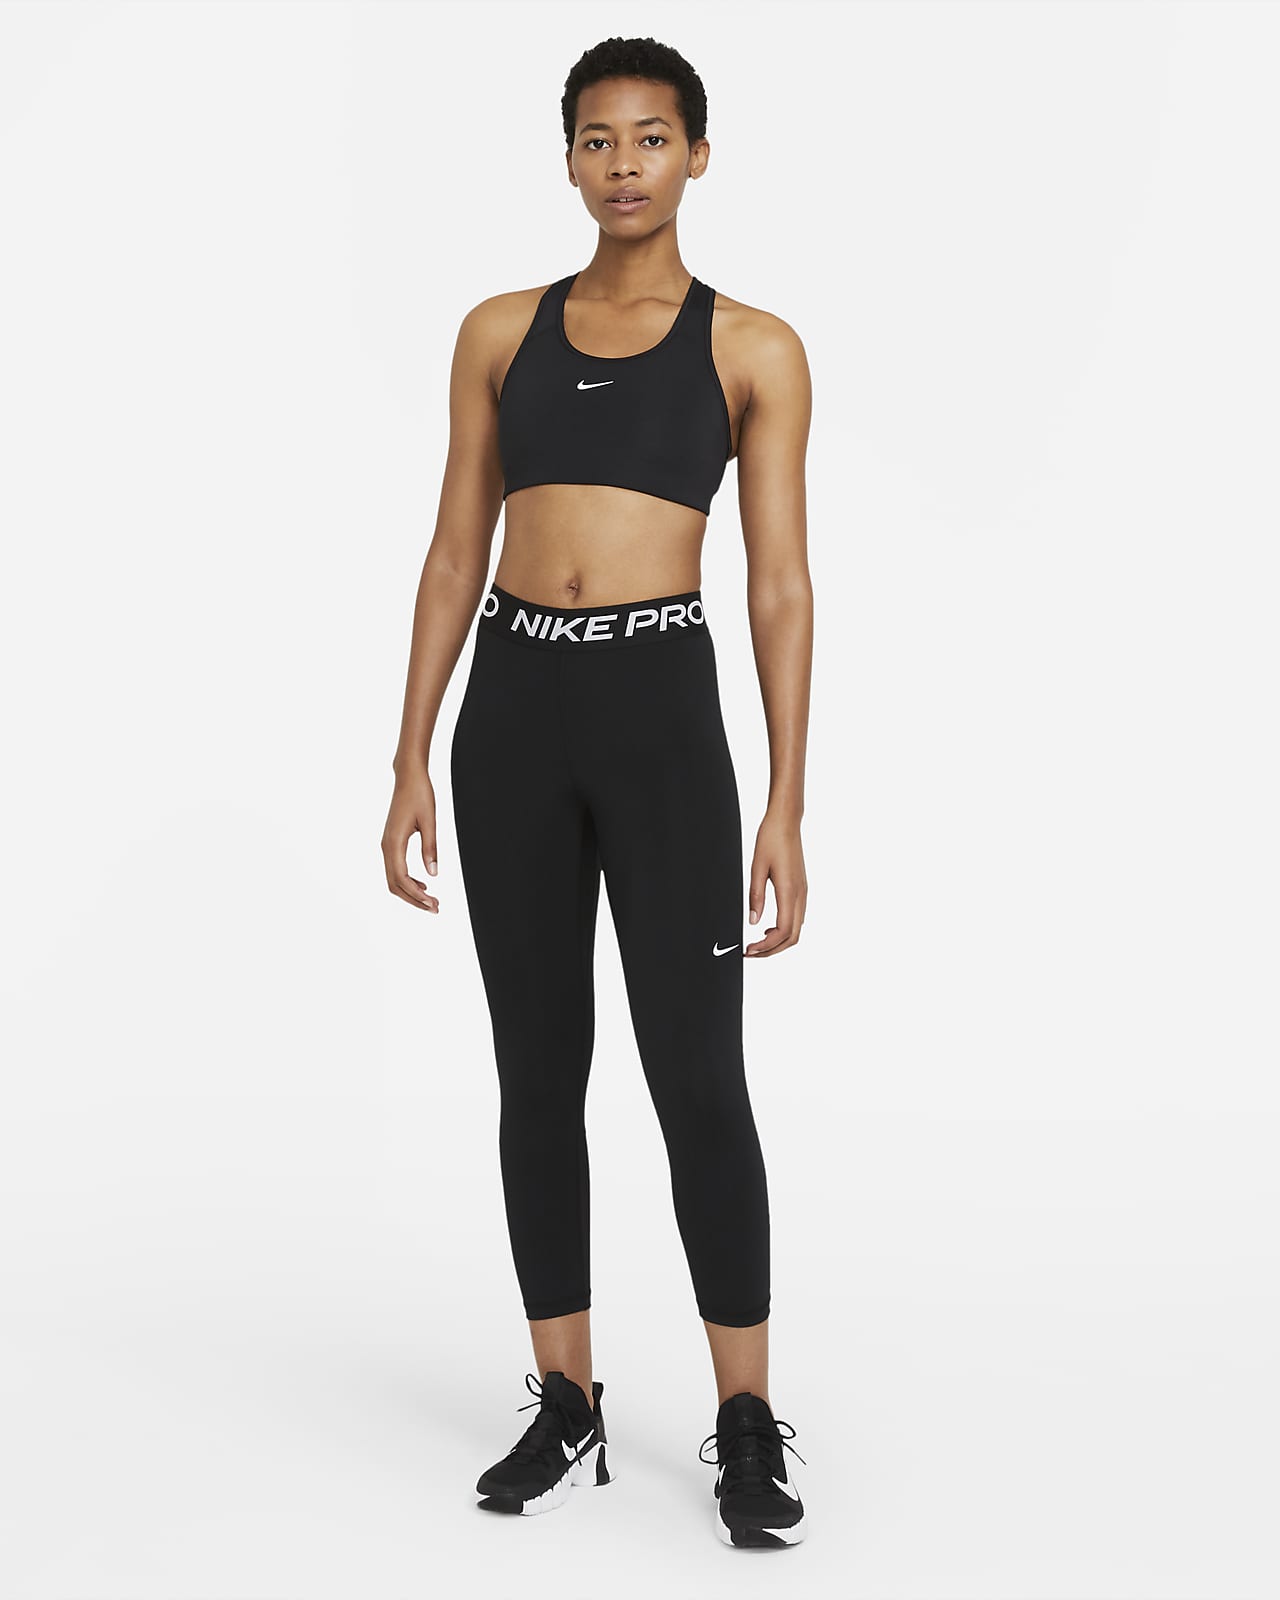 Nike Pro Legginsy damskie sportowe sportswear - 13116607400